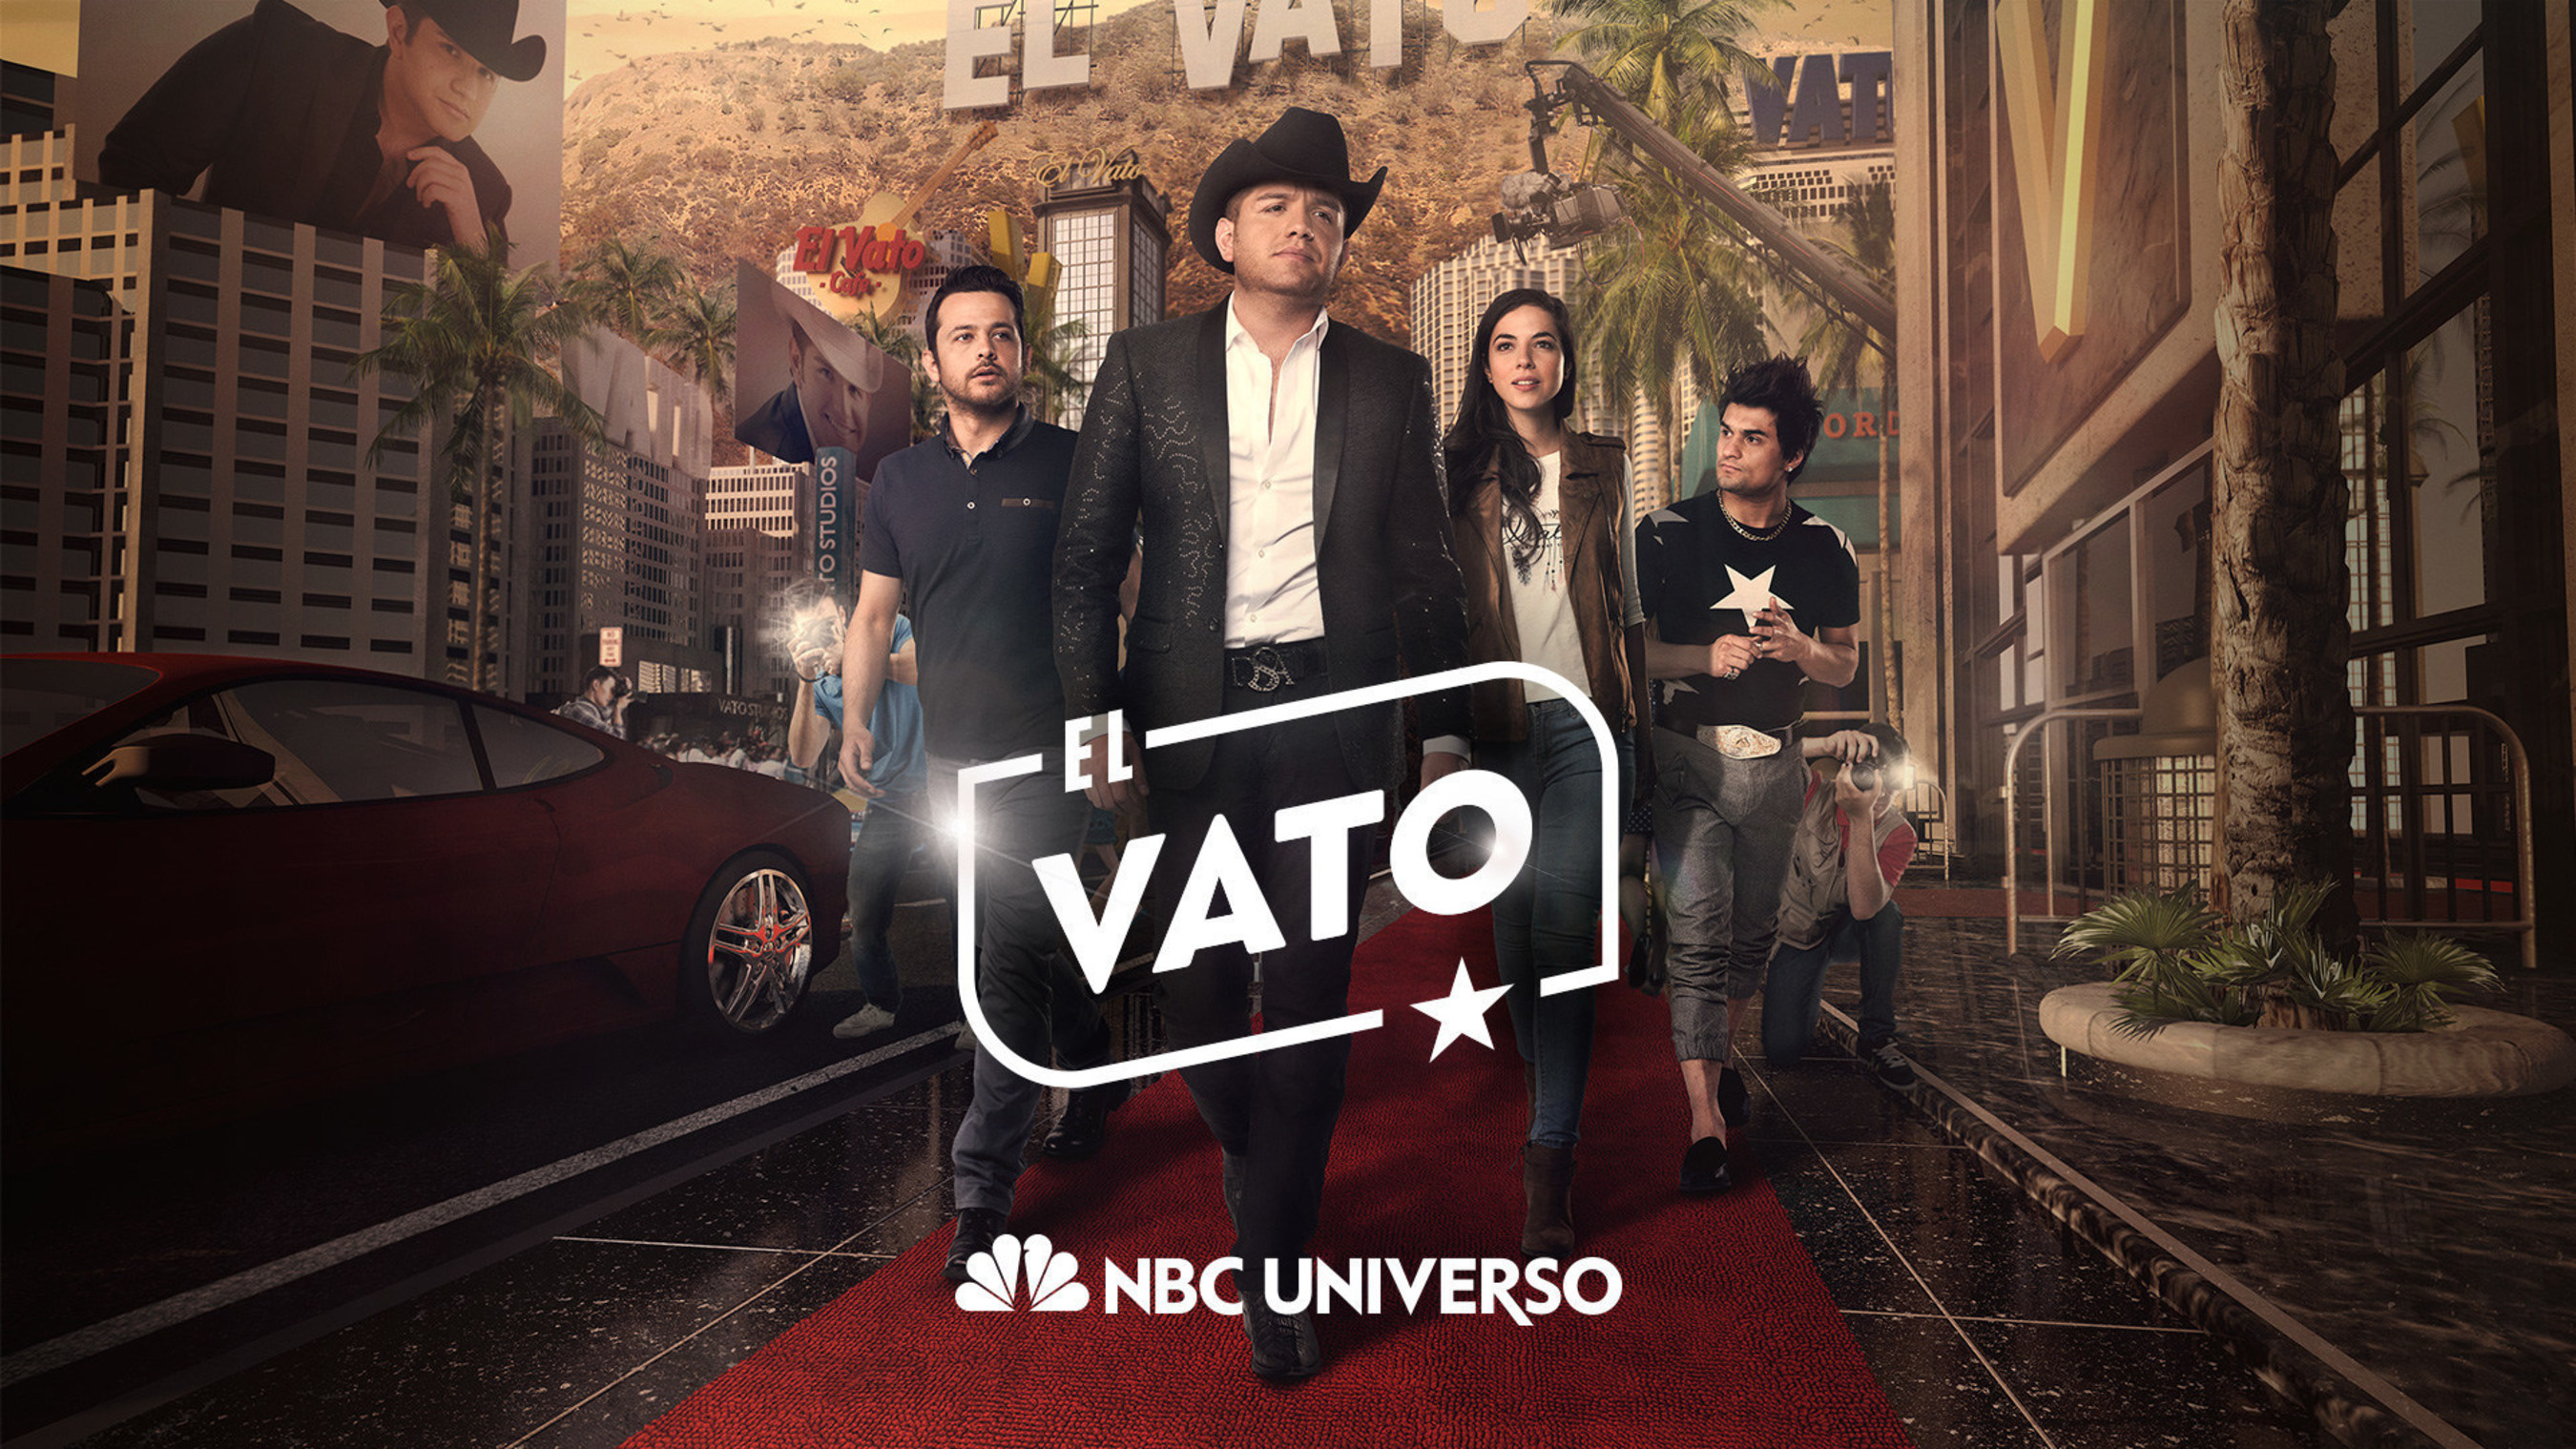 Elenco de la serie original "El Vato" de NBC UNIVERSO, con El Dasa, Cristina Rodlo, Gustavo Egelhaaf y Ricardo Polanco en los papeles protagonicos